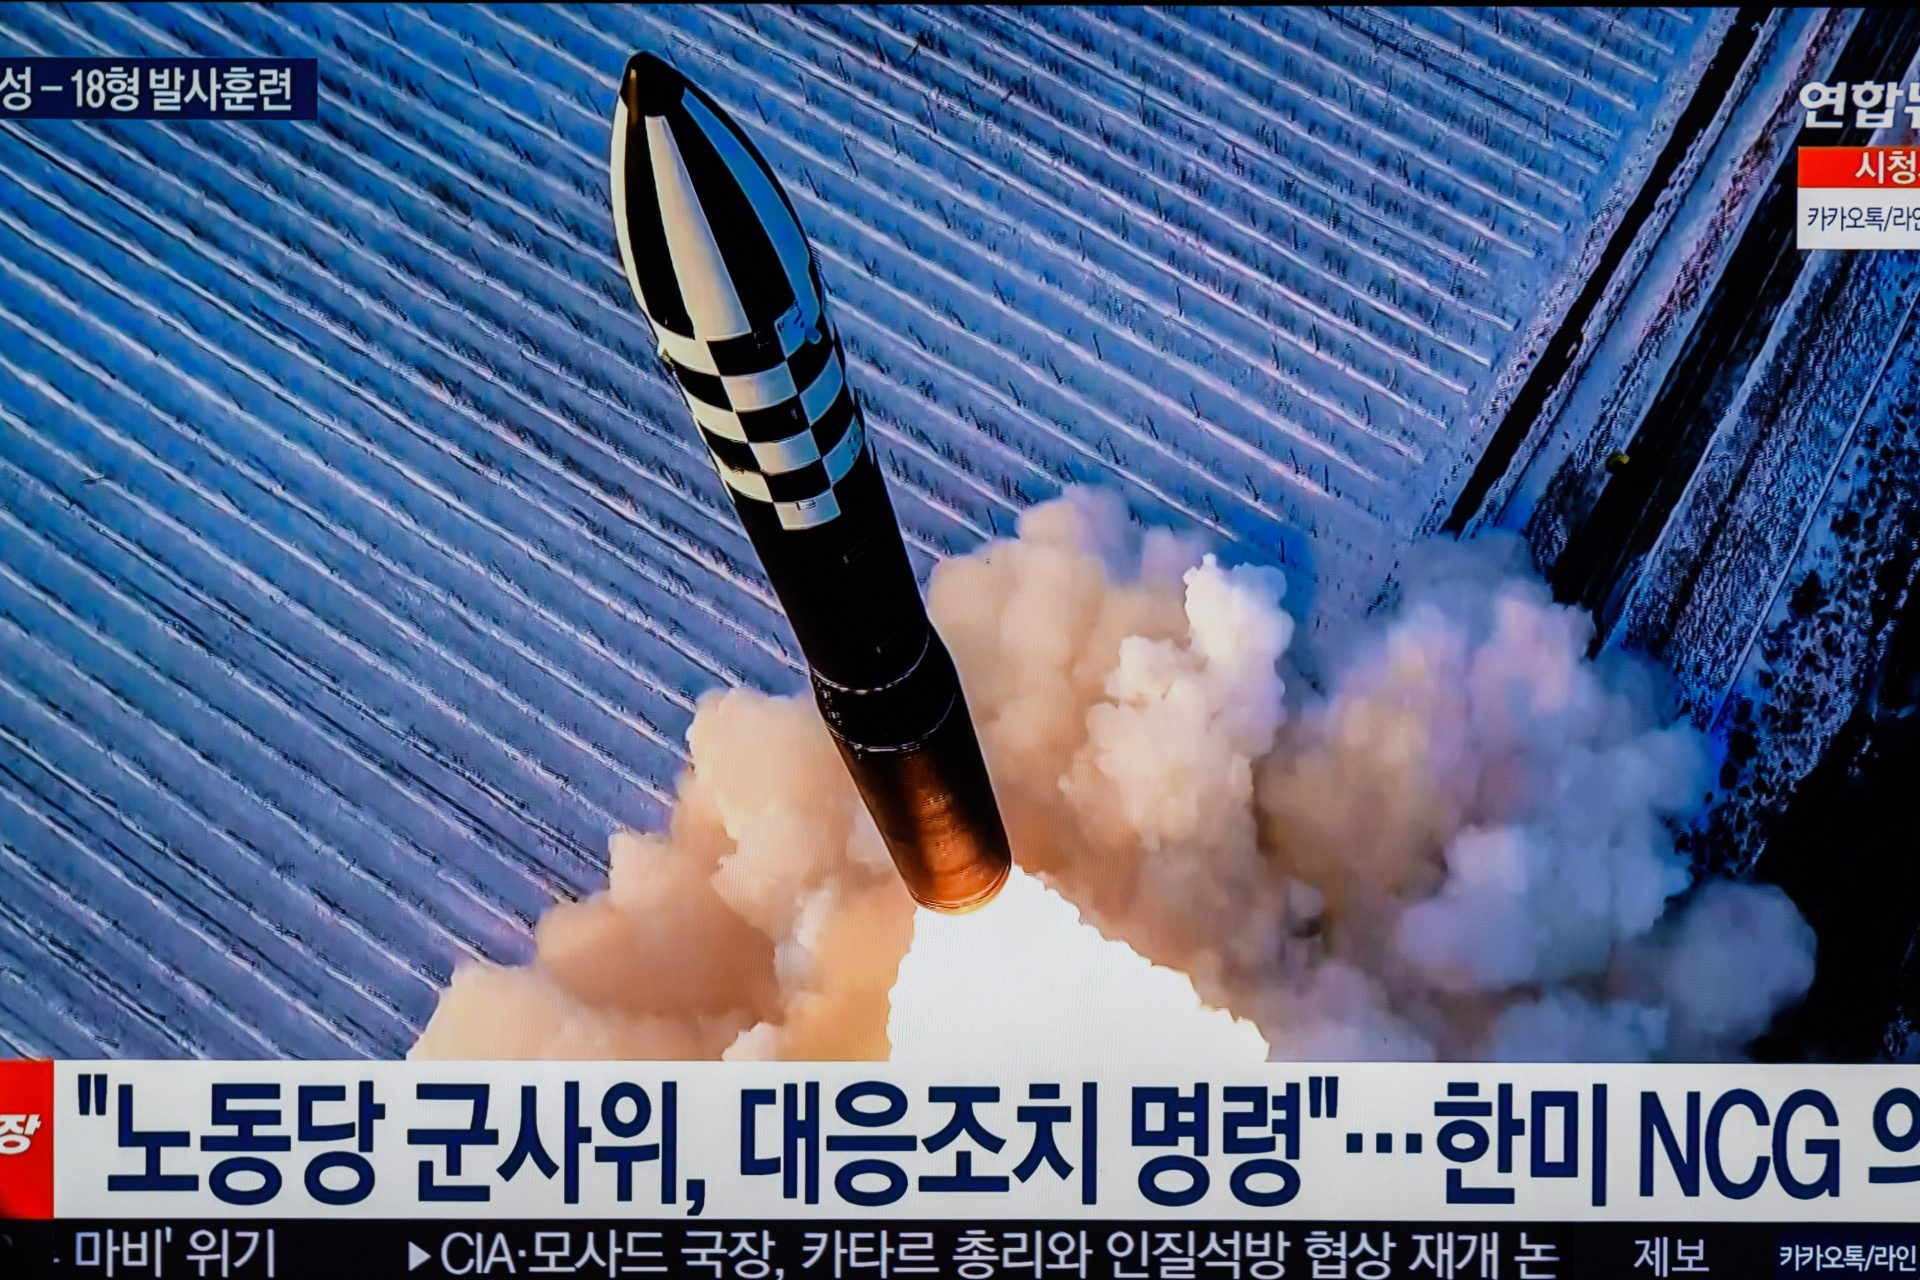 Von Russland eingesetzte nordkoreanische Raketen enthielten amerikanische Bestandteile